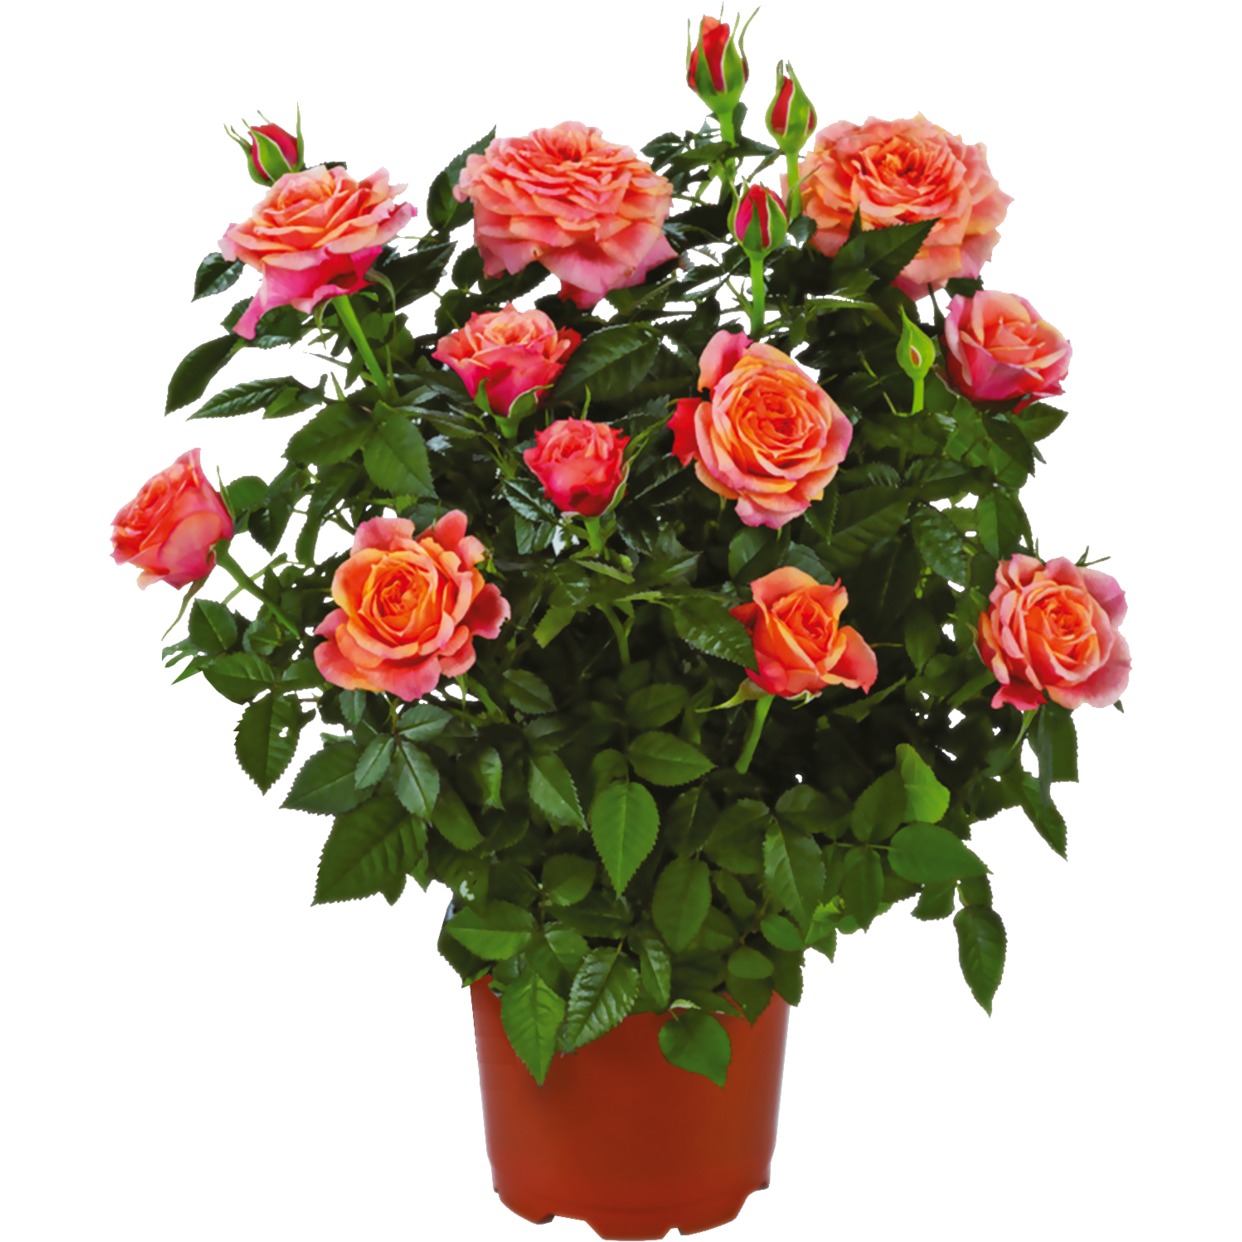 ДСК Цветы горшечные Роза Кордана D:10,5 по акции в Пятерочке